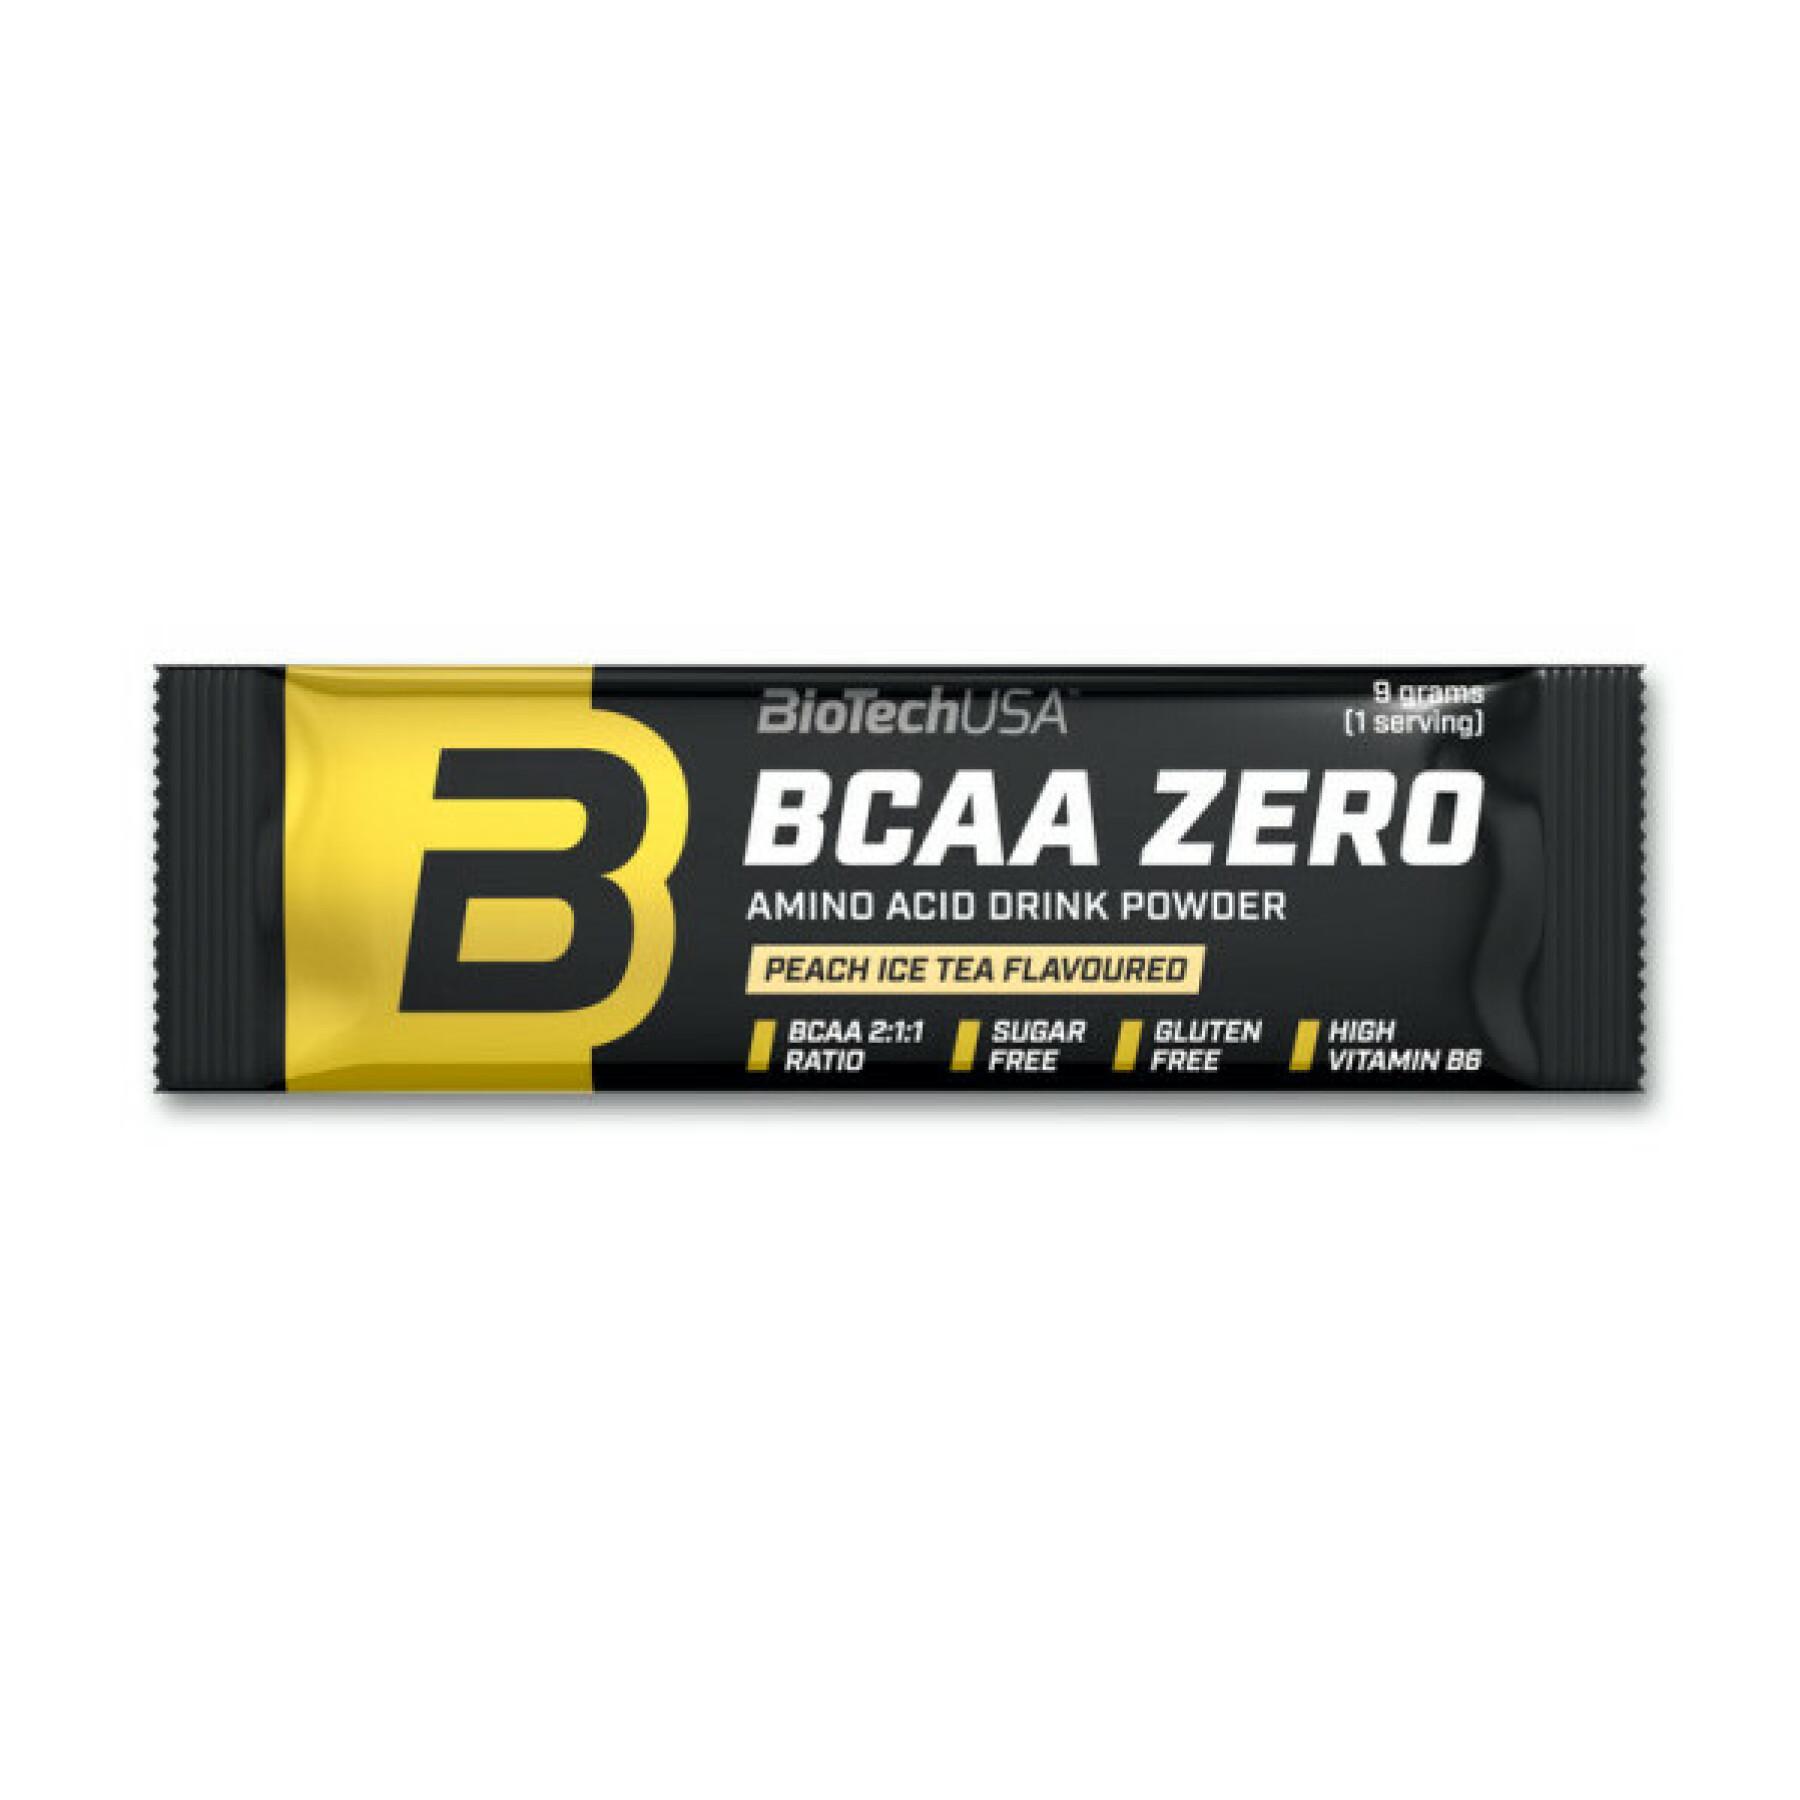 50 pacchetti di aminoacidi Biotech USA bcaa zero - Cola - 9g